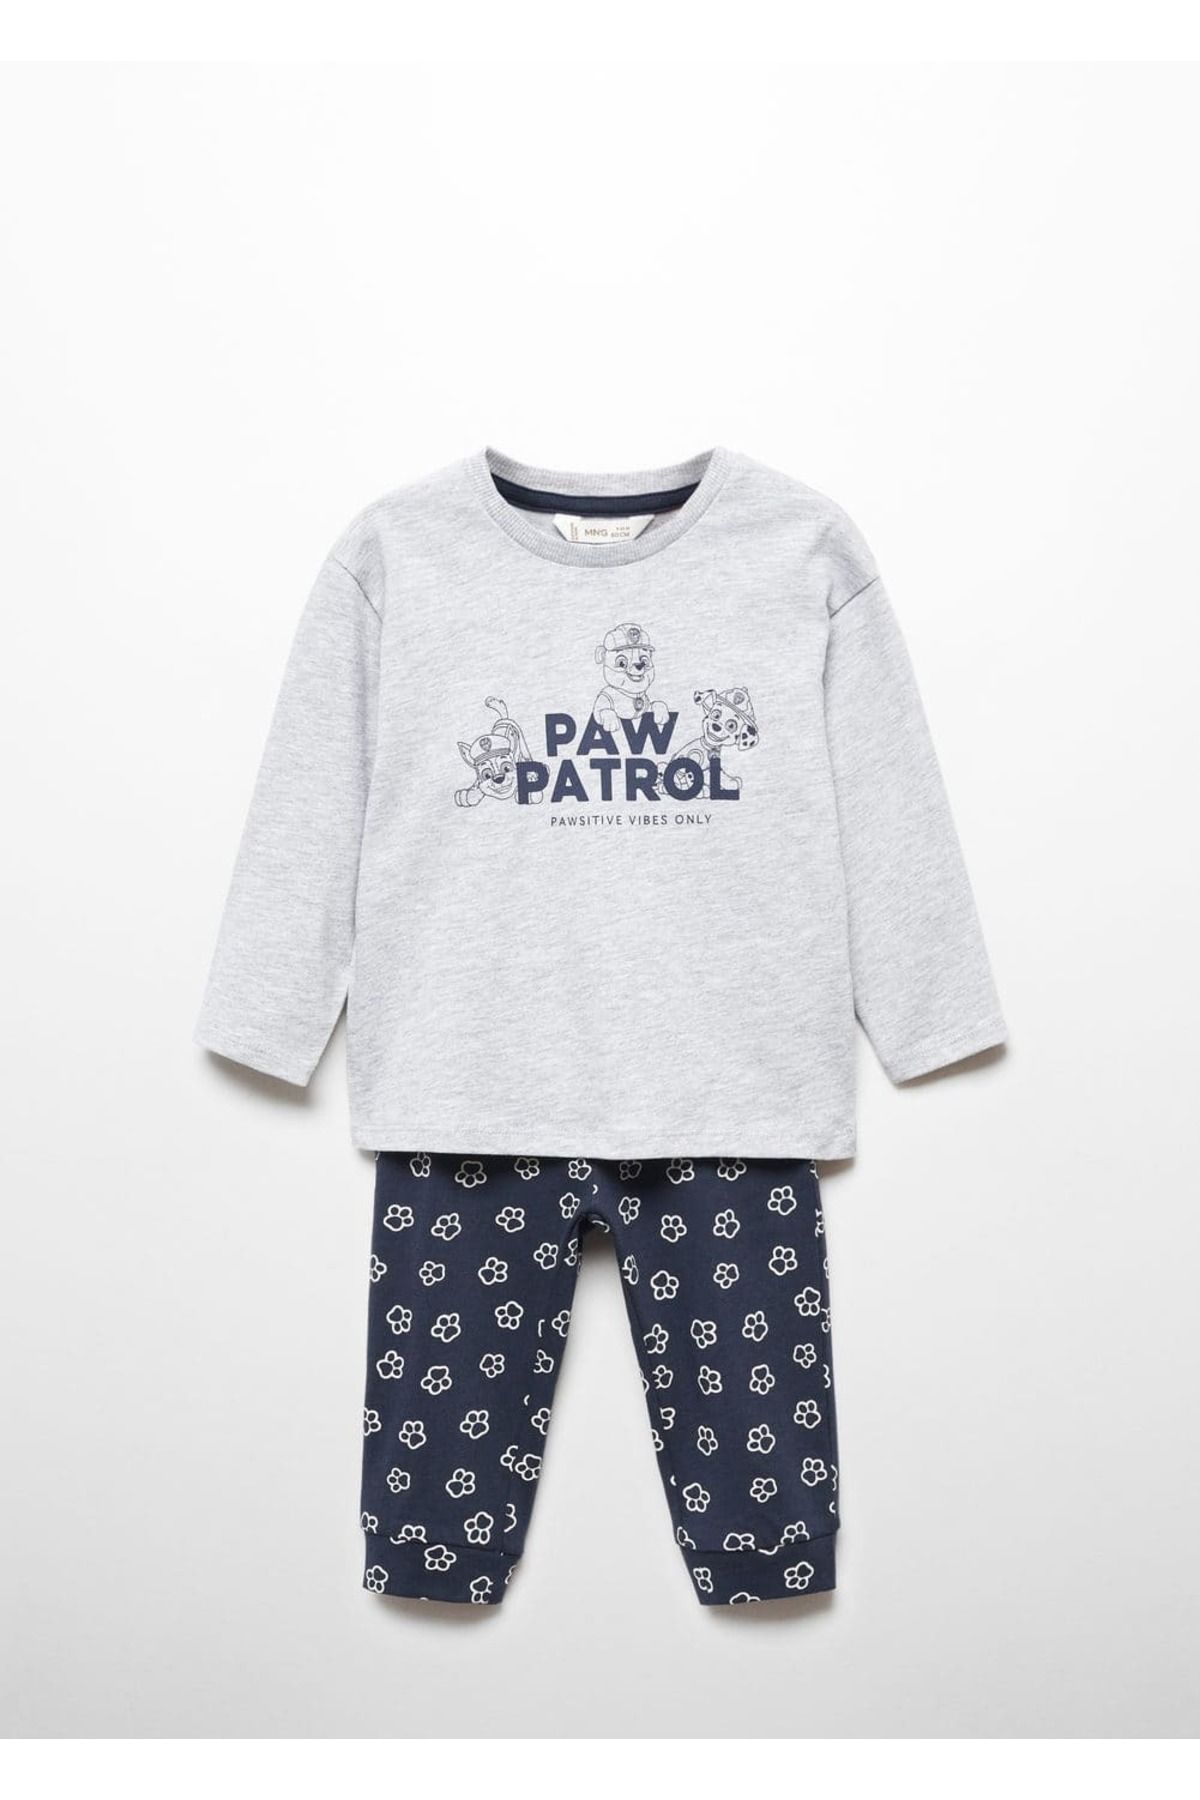 MANGO Baby Paw Patrol Pijama